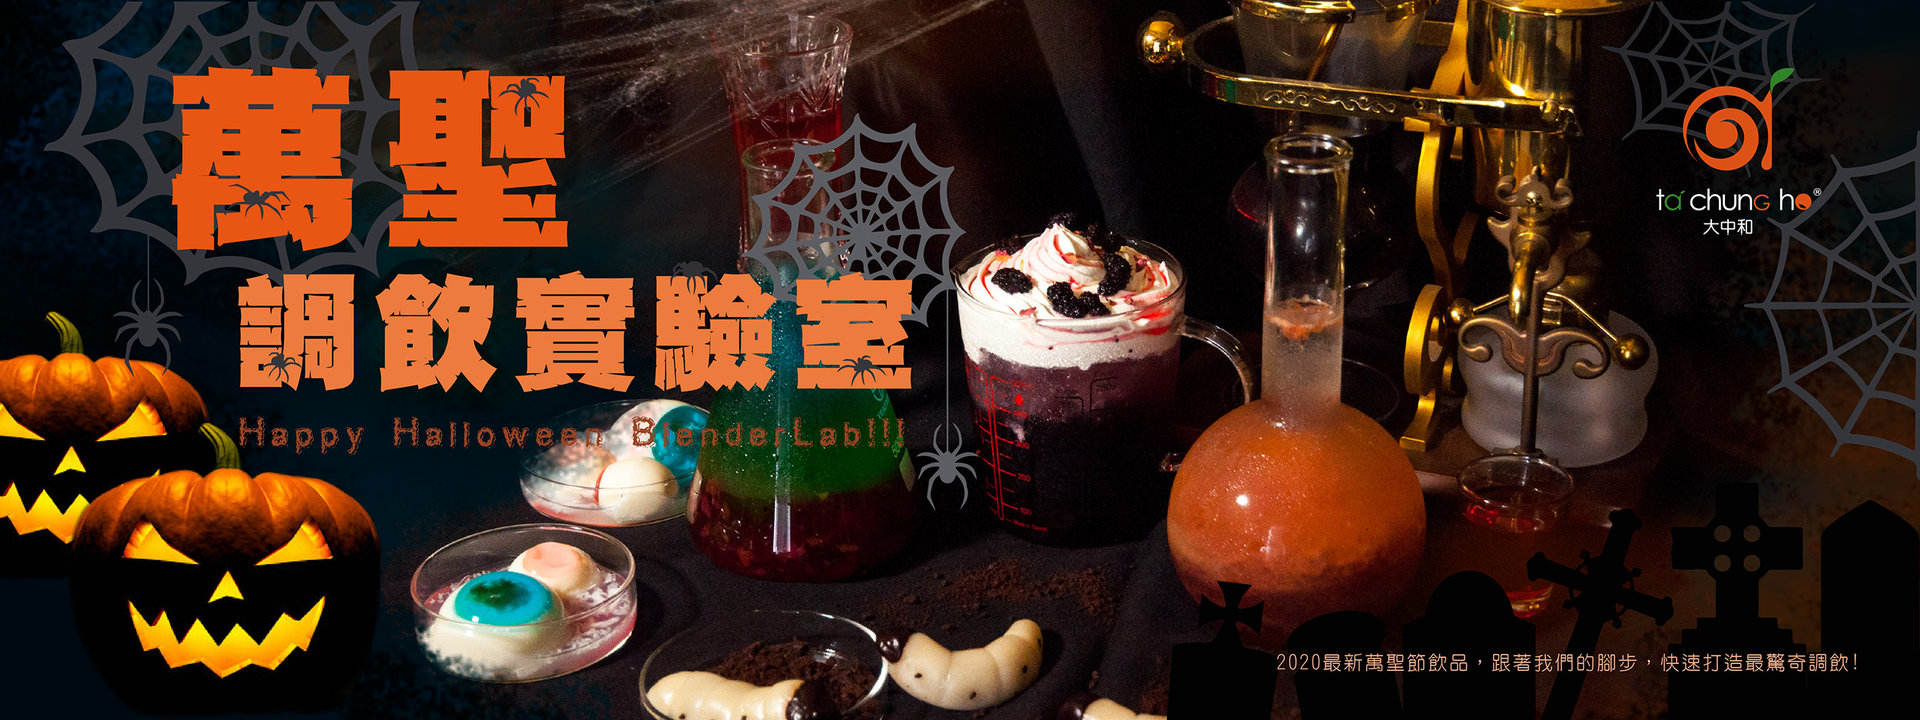 【2020萬聖節新提案】萬聖調飲實驗室Happy Halloween BlenderLab!!!